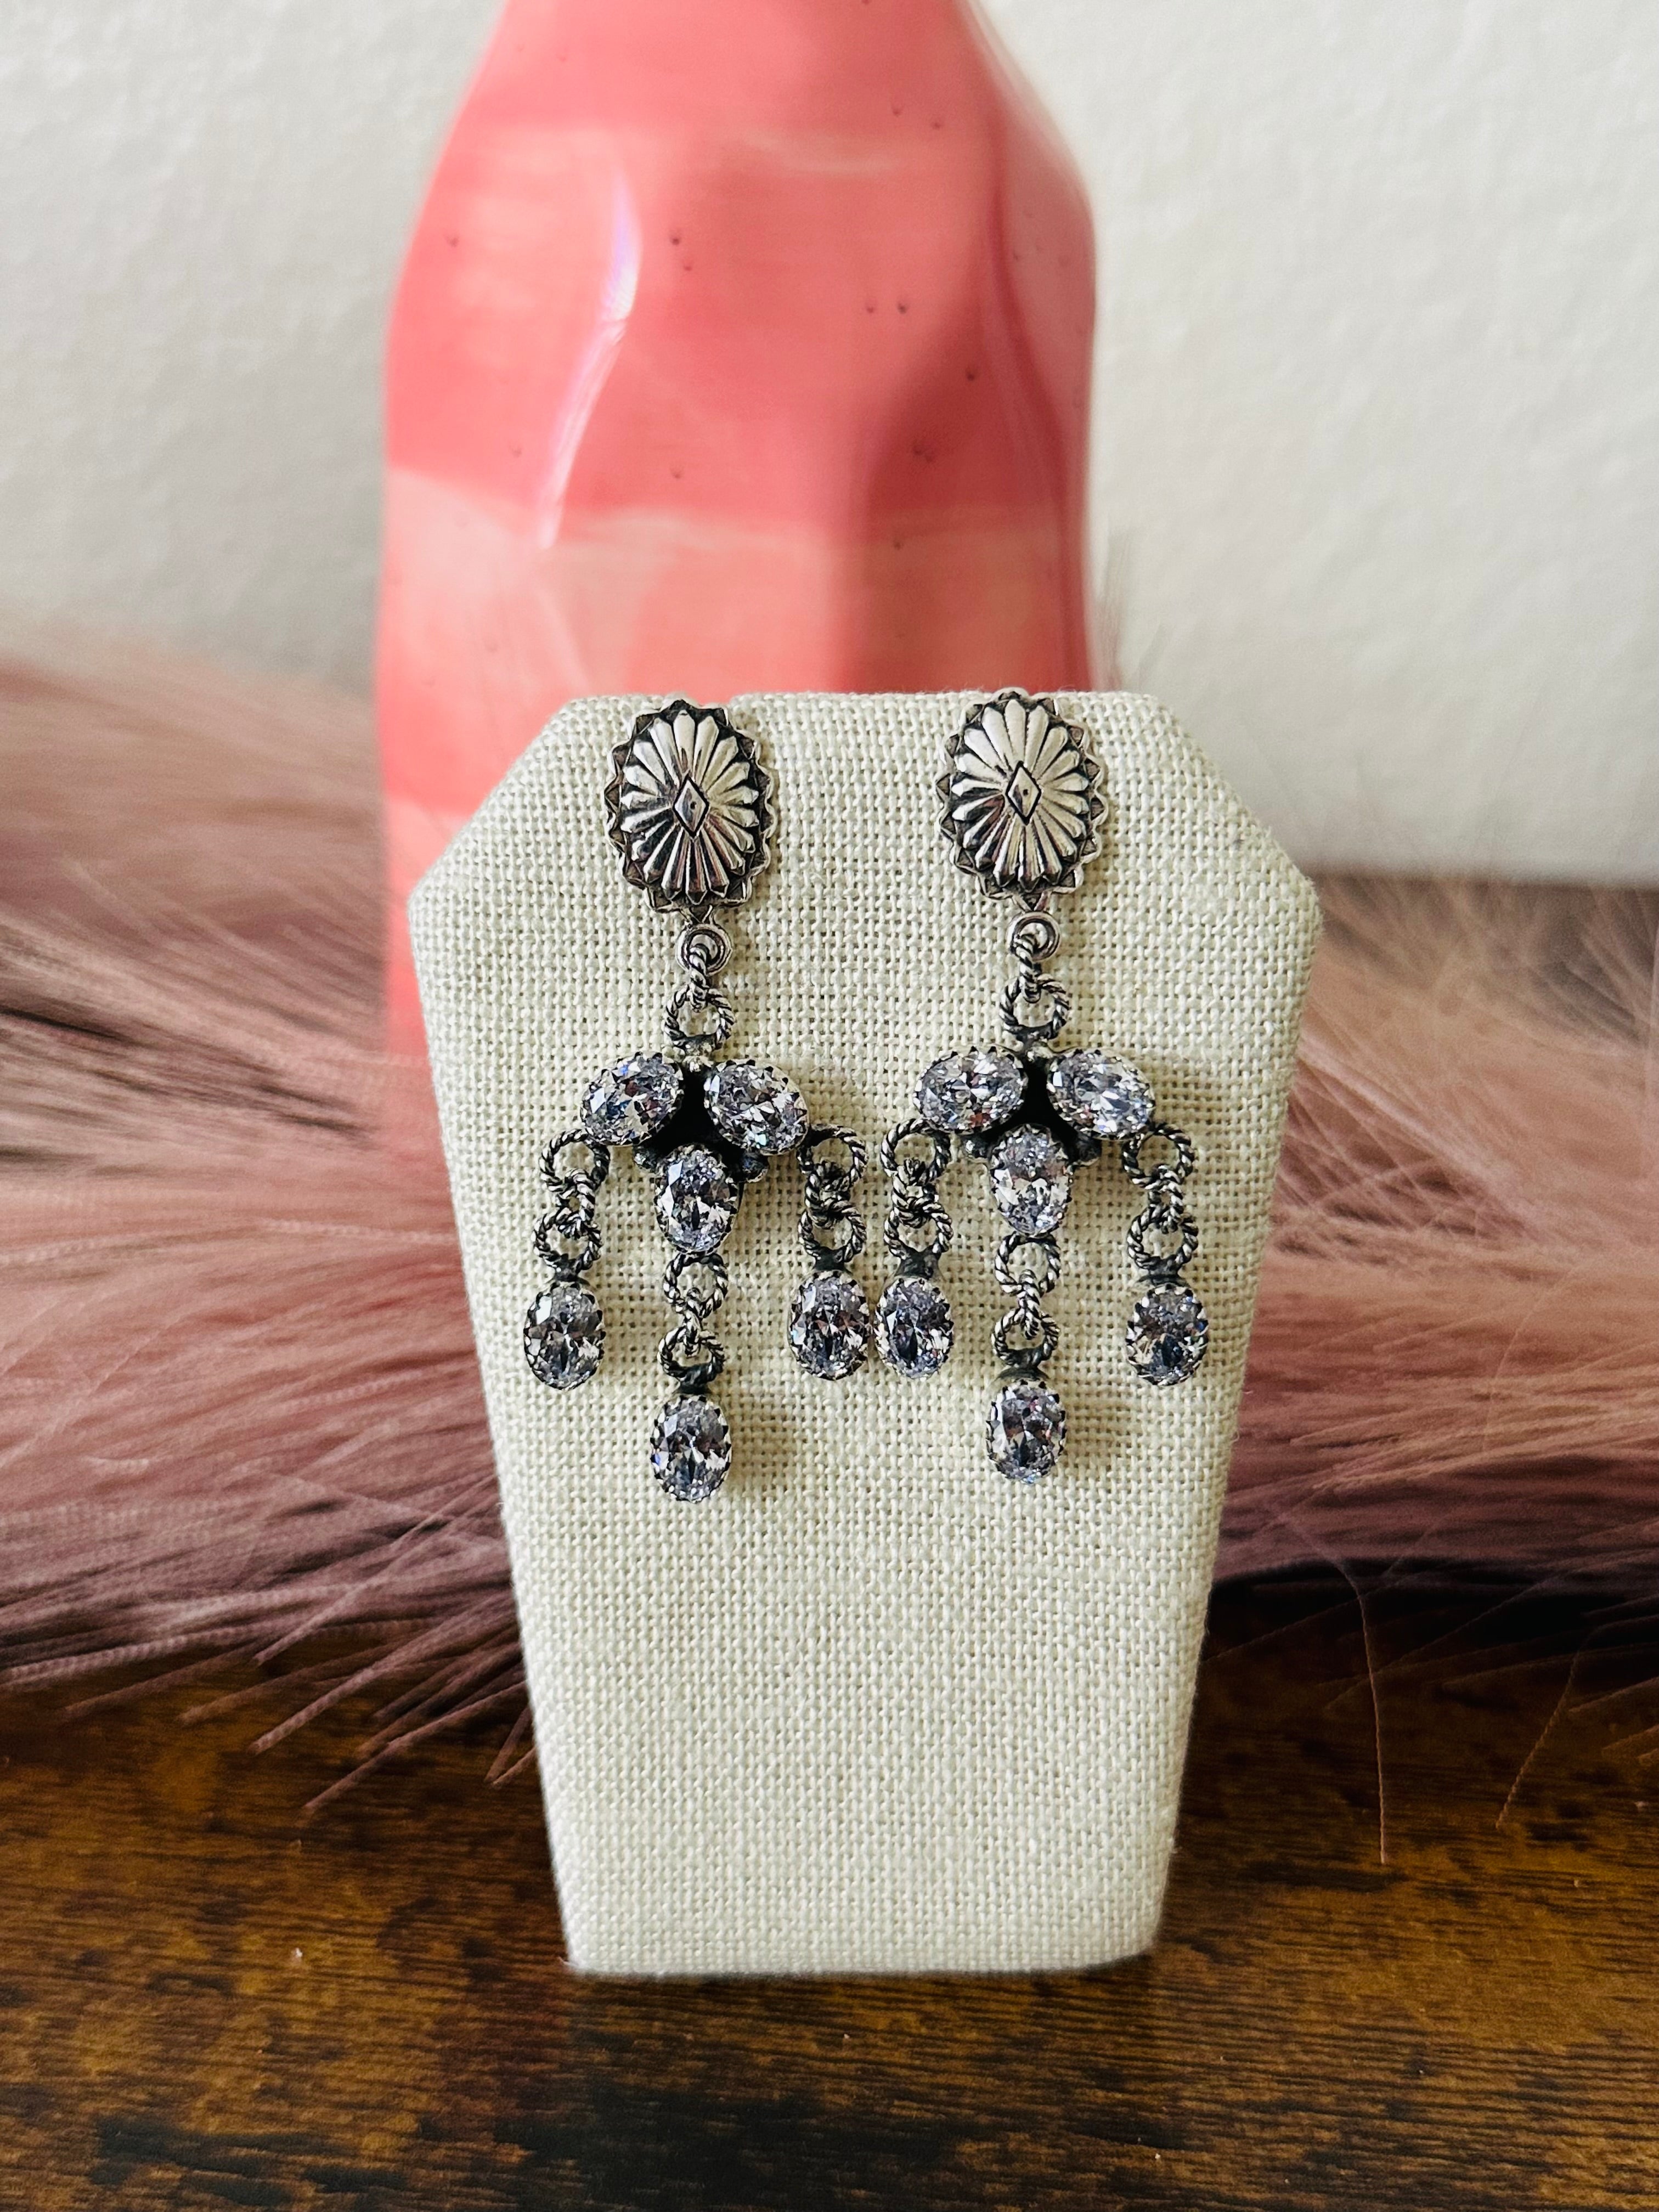 Southwest Handmade Cubic Zirconia & Sterling Silver Post Dangle Earrings